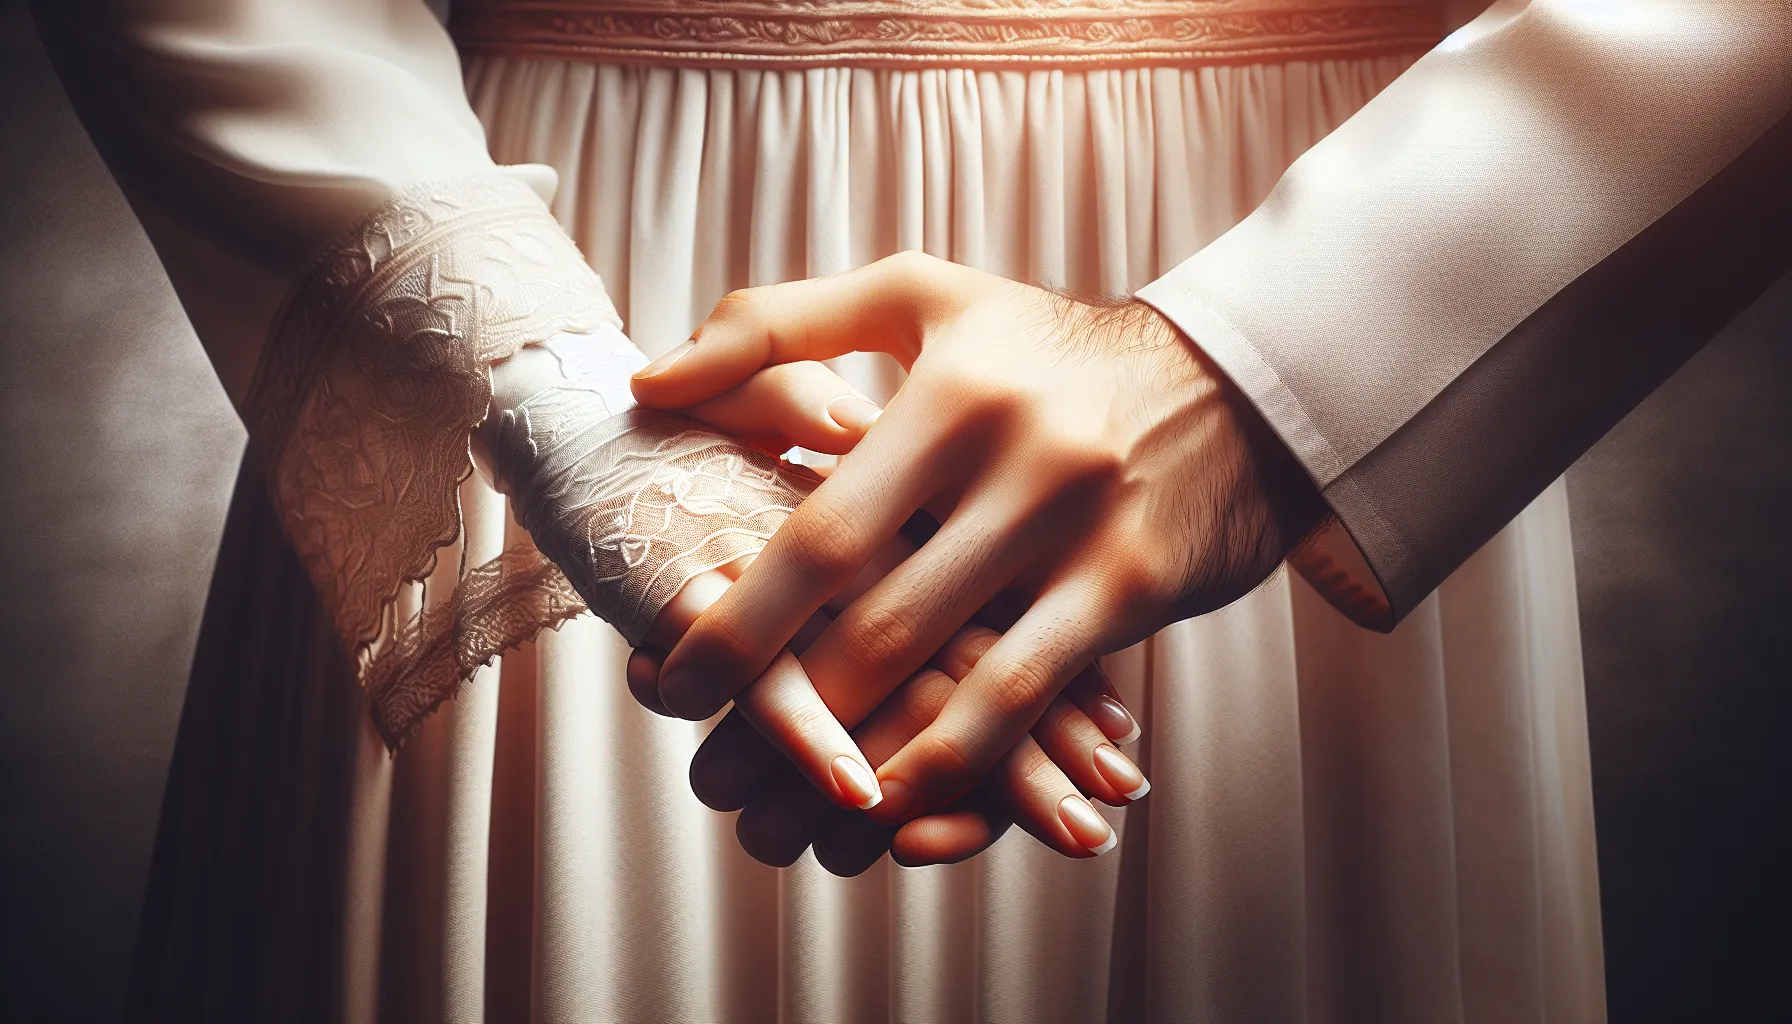 Una imagen conceptual representando la unión marital